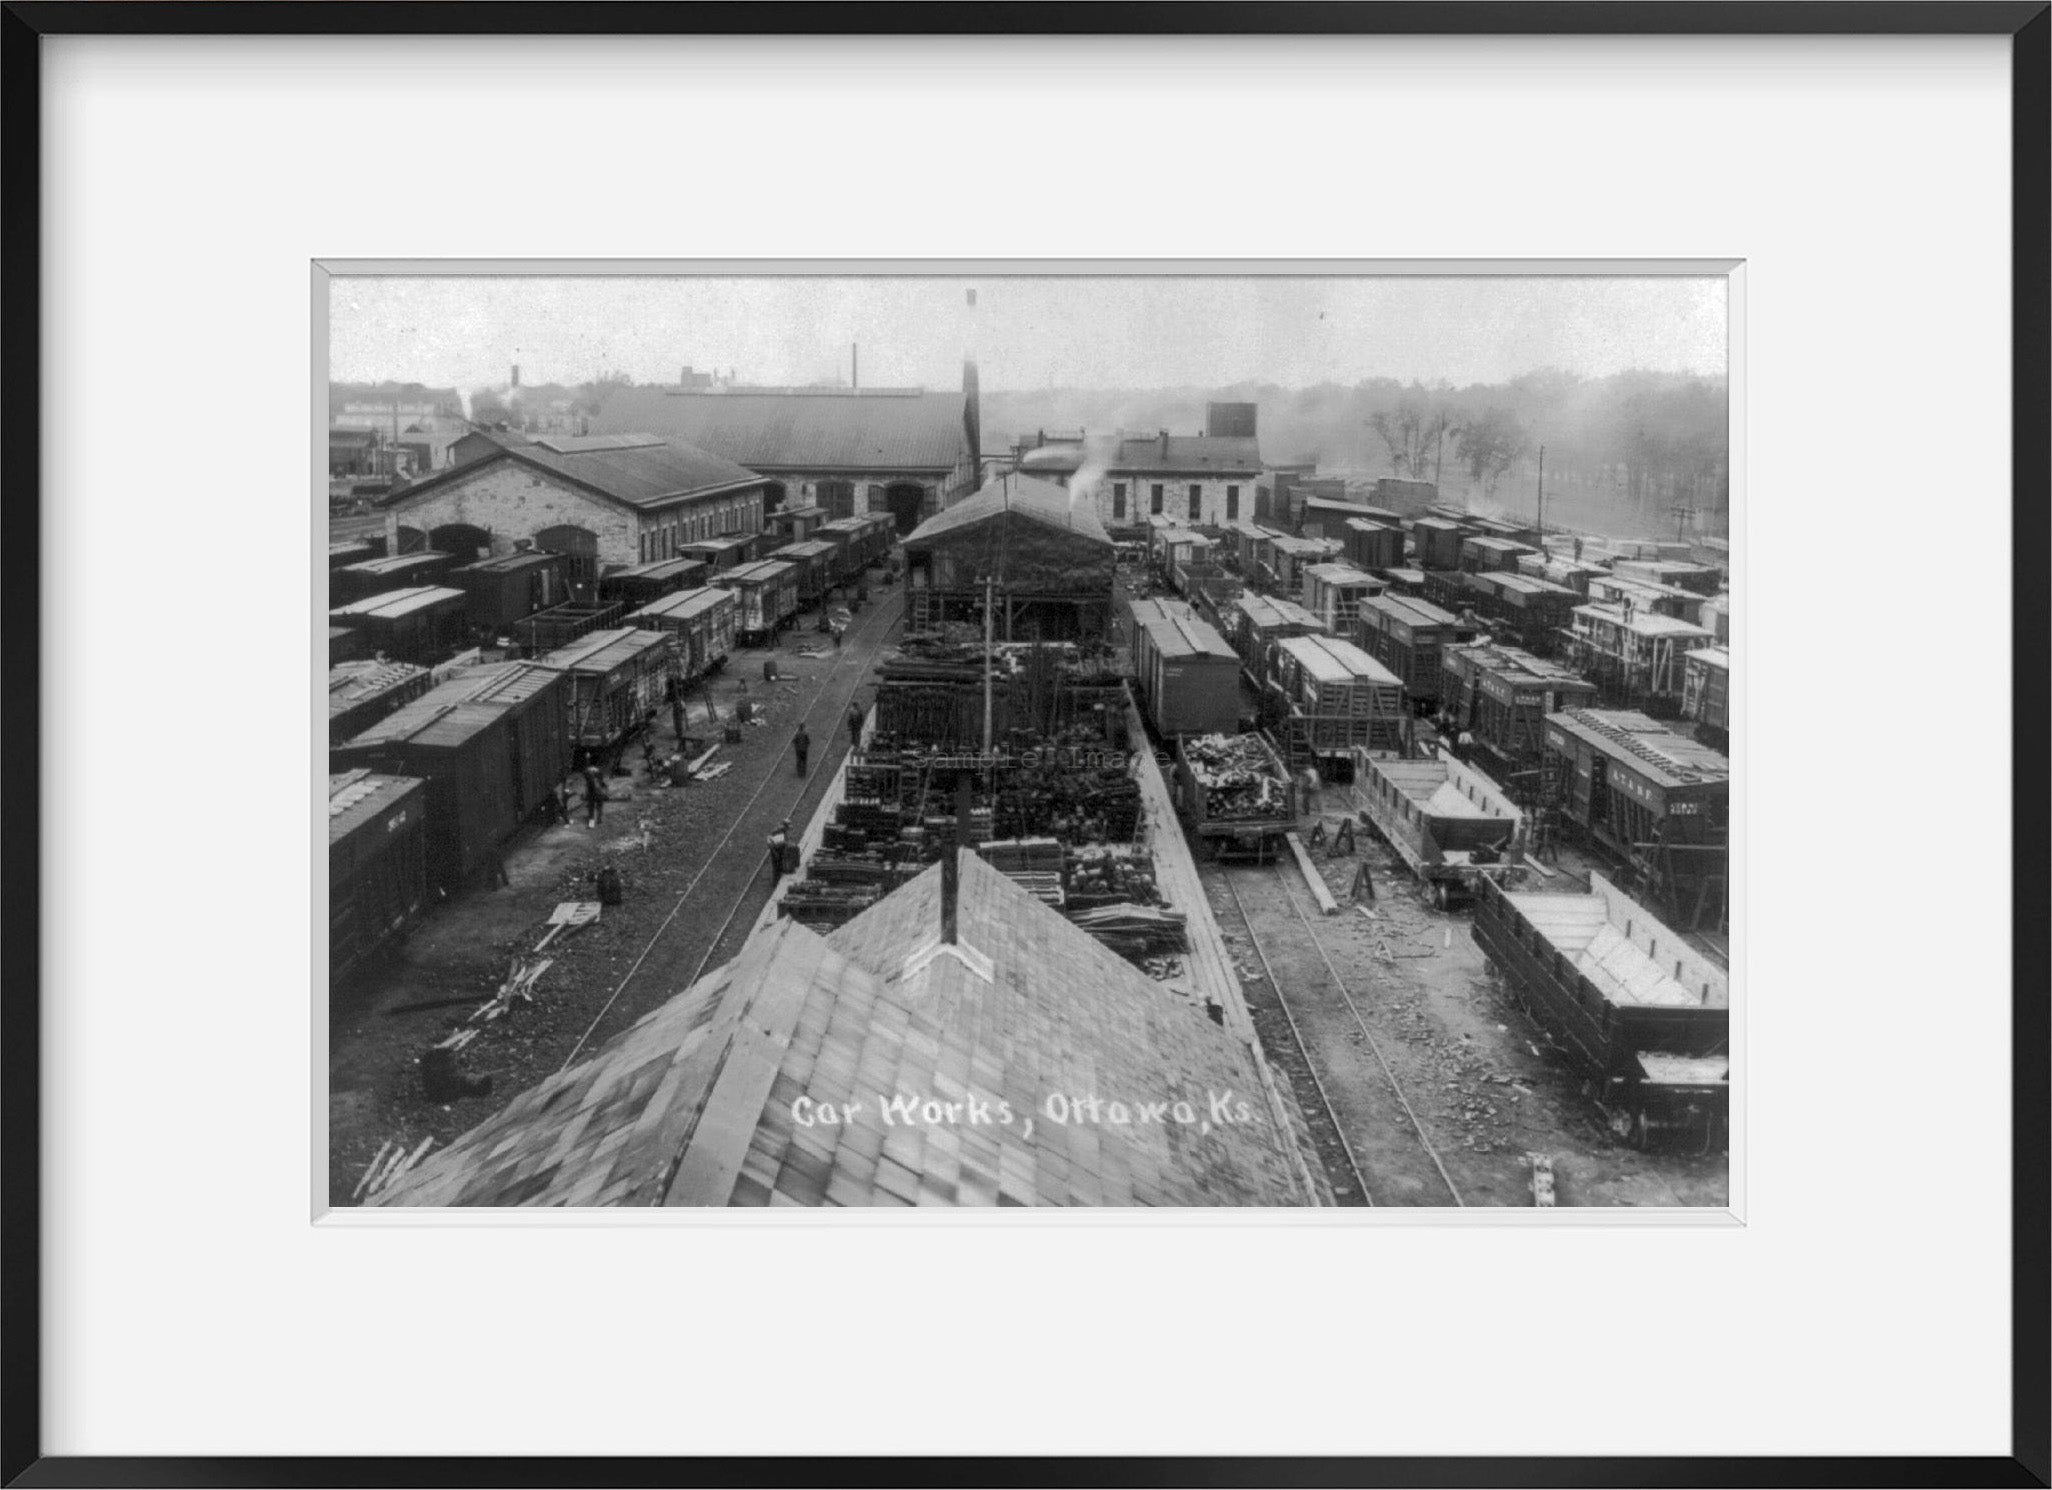 Photo: Railroad car works, trains, tracks, Ottawa, Kansas, KS, c1910